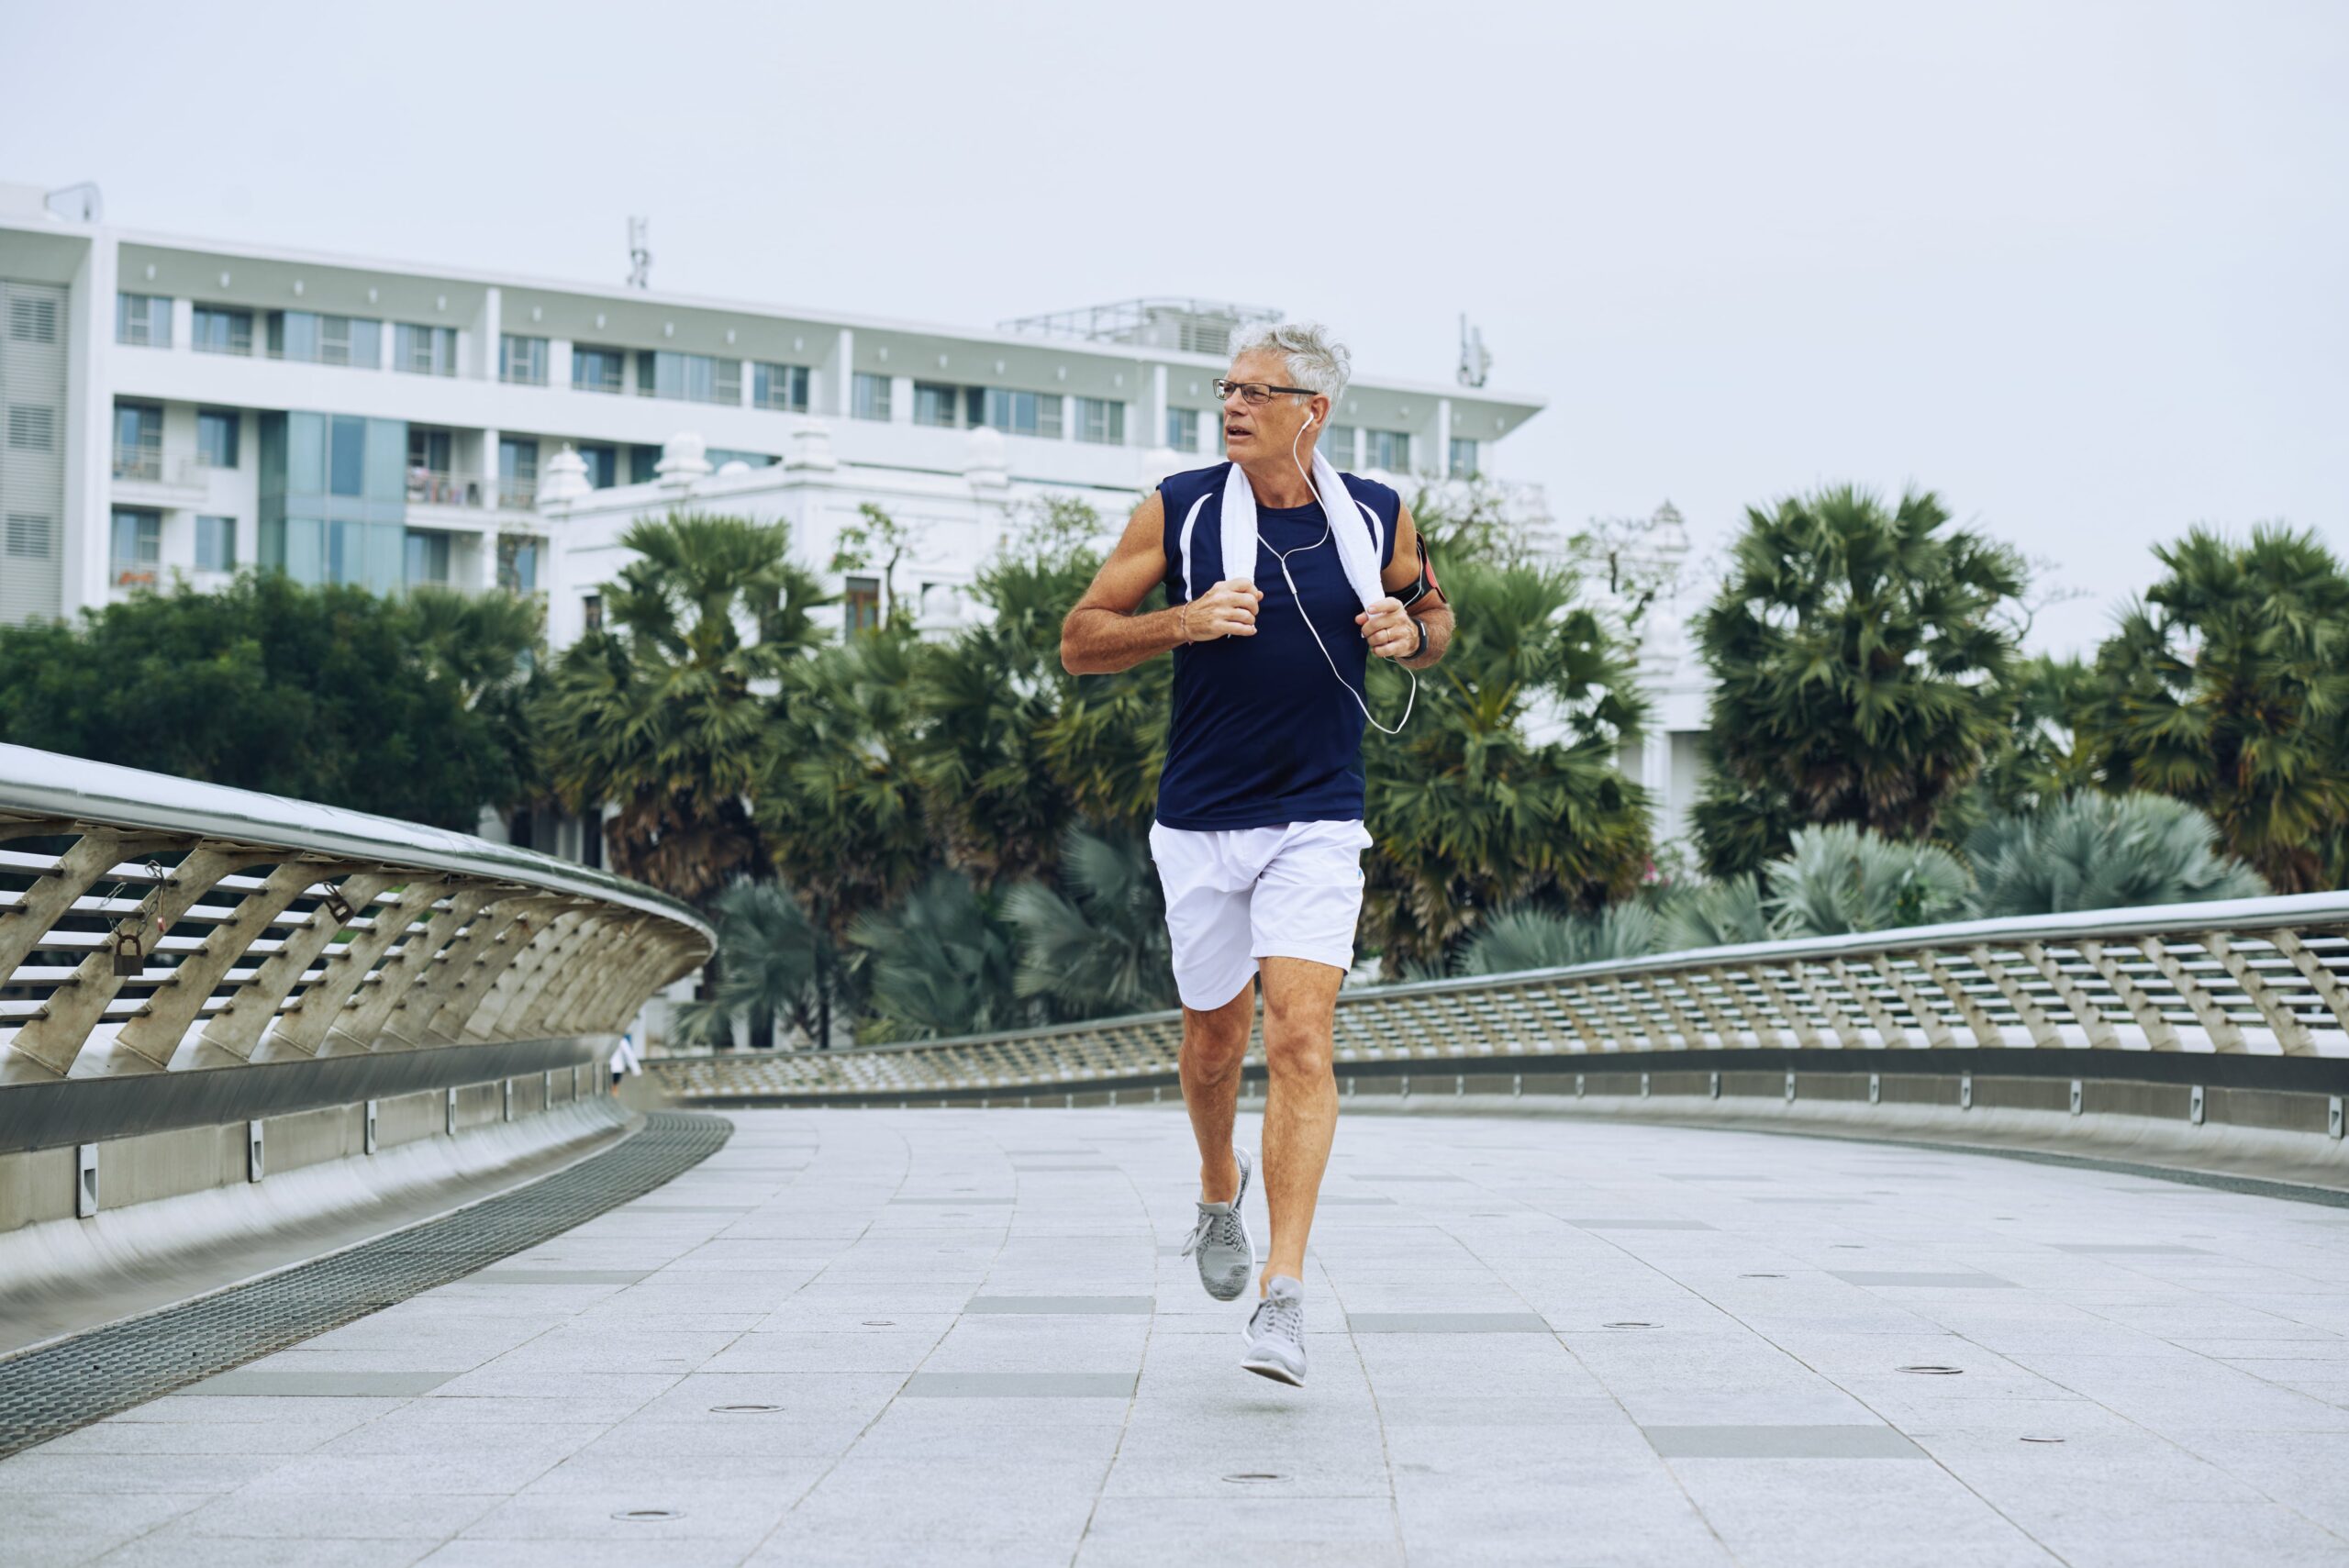 Envejecimiento saludable y activo: consejos de la OMS